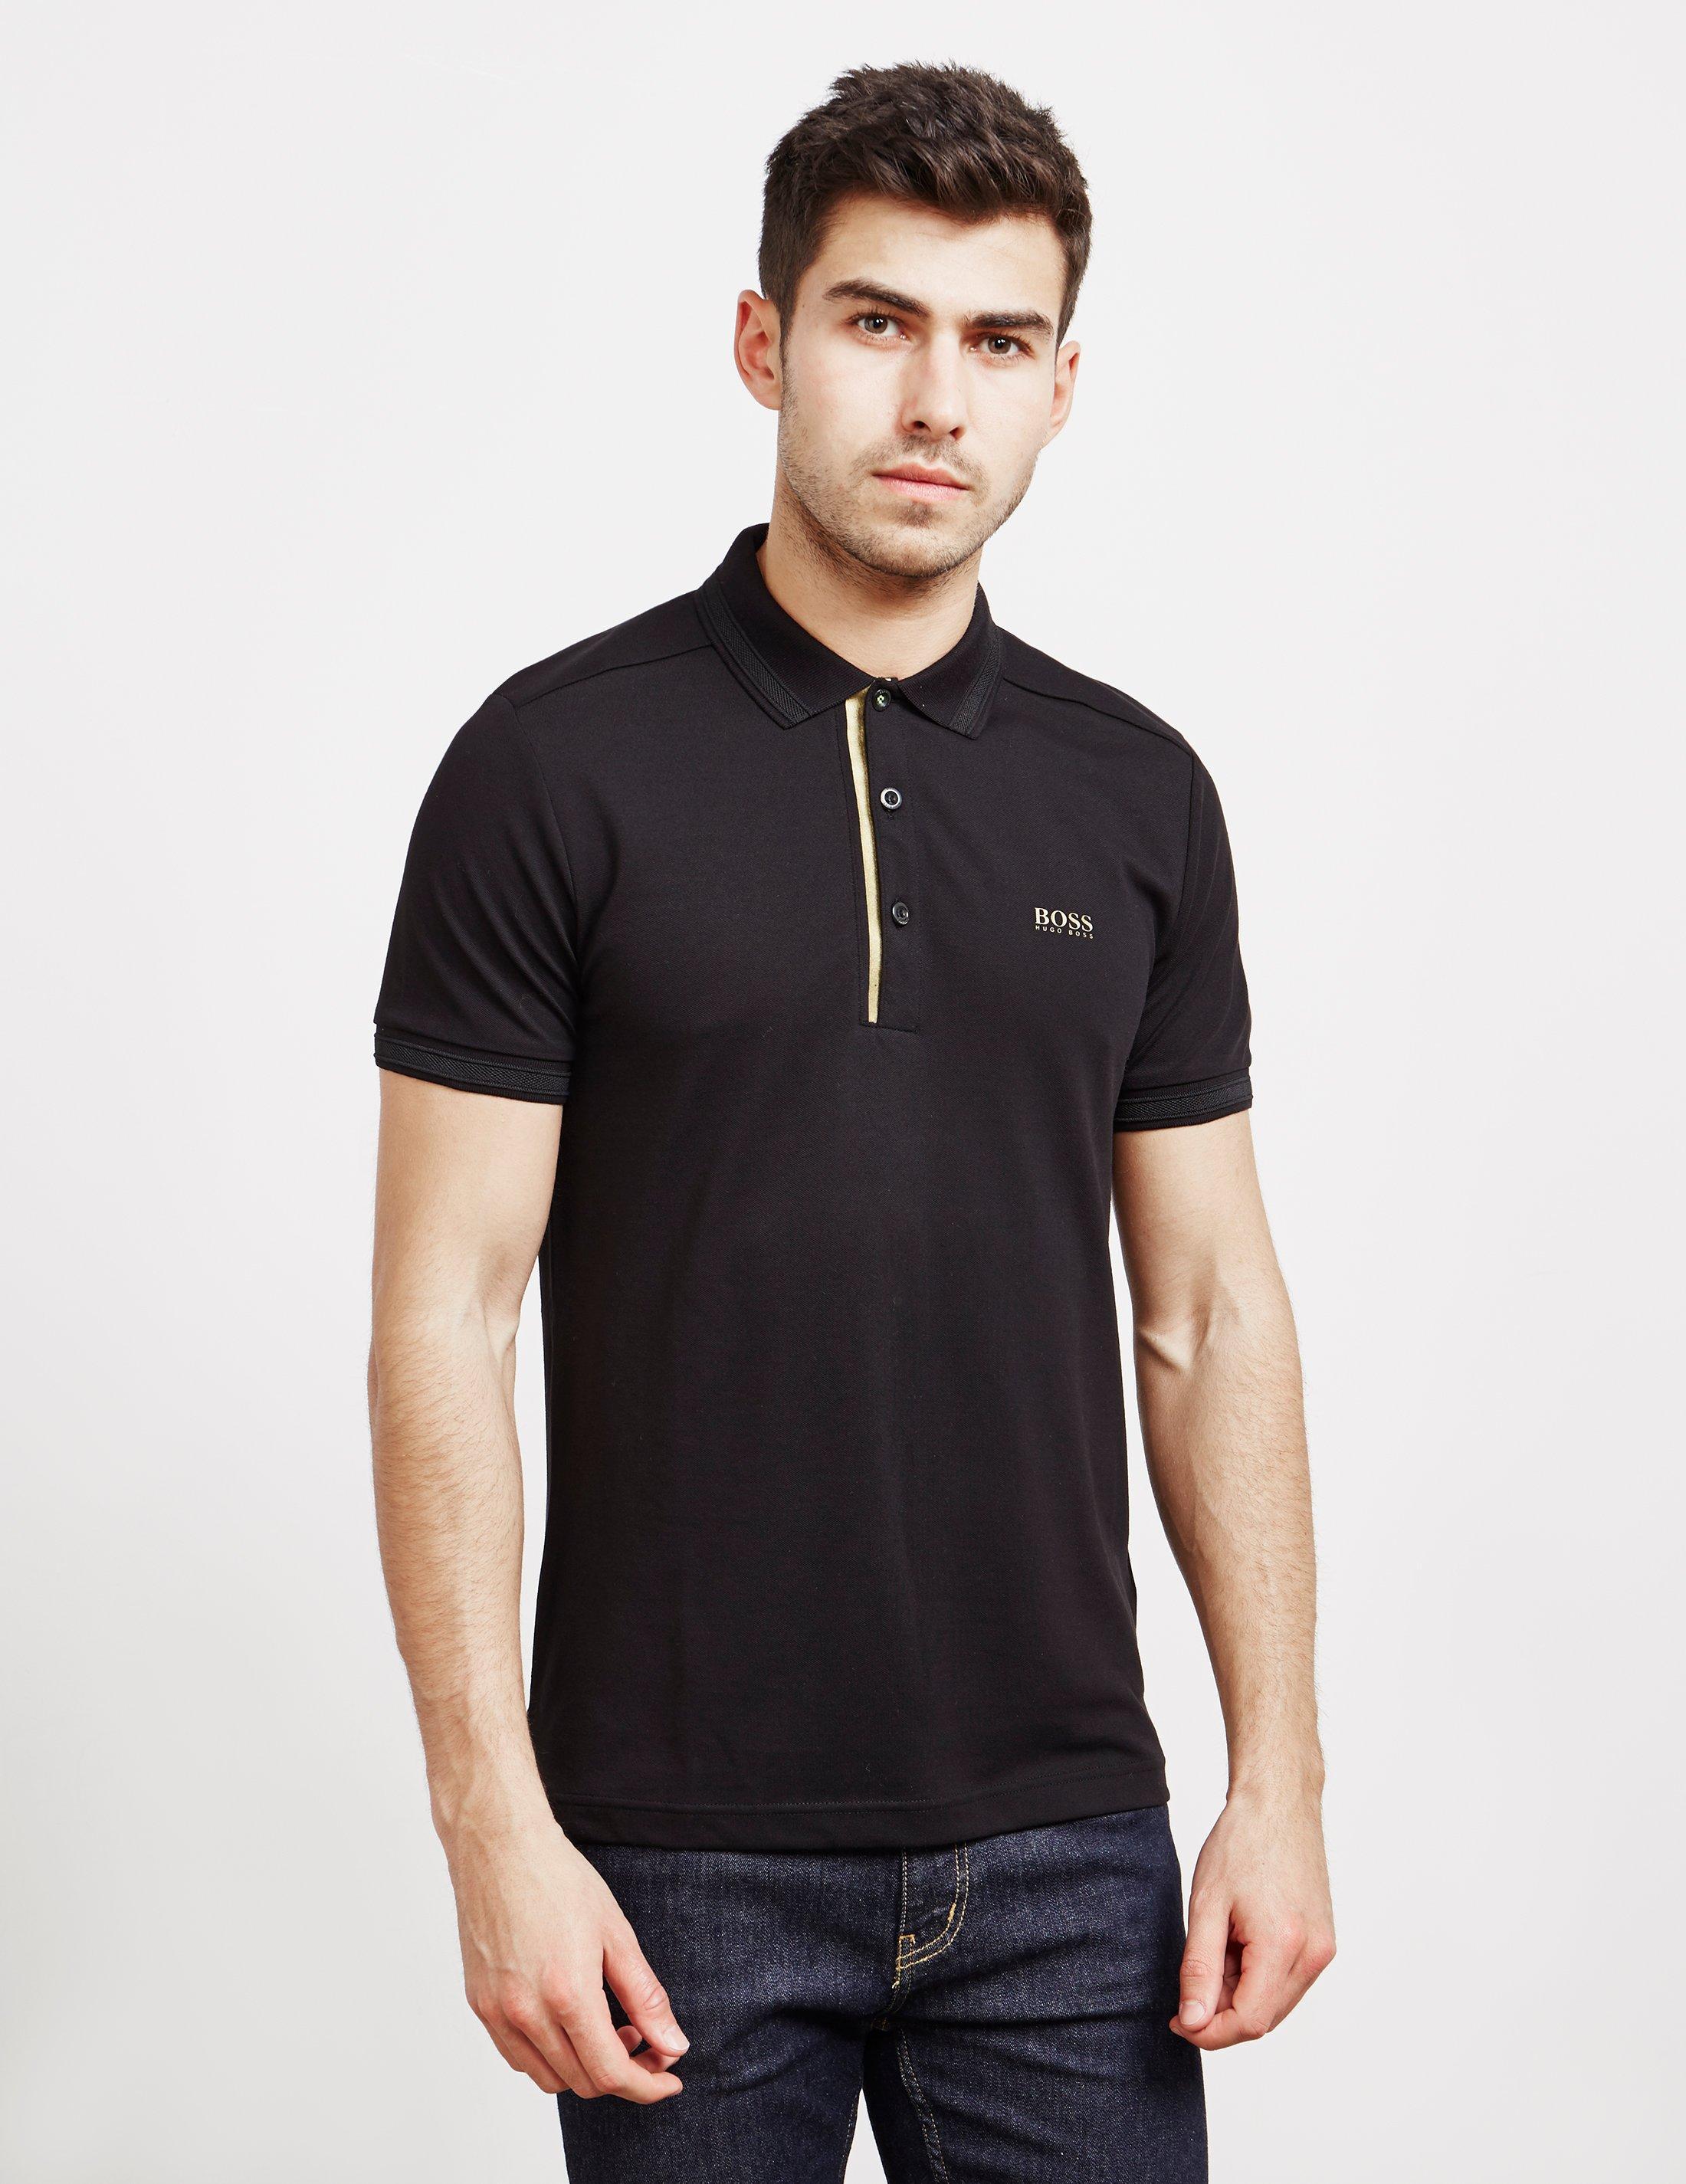 BOSS by HUGO BOSS Gold Placket Short Sleeve Polo Shirt Black for Men | Lyst